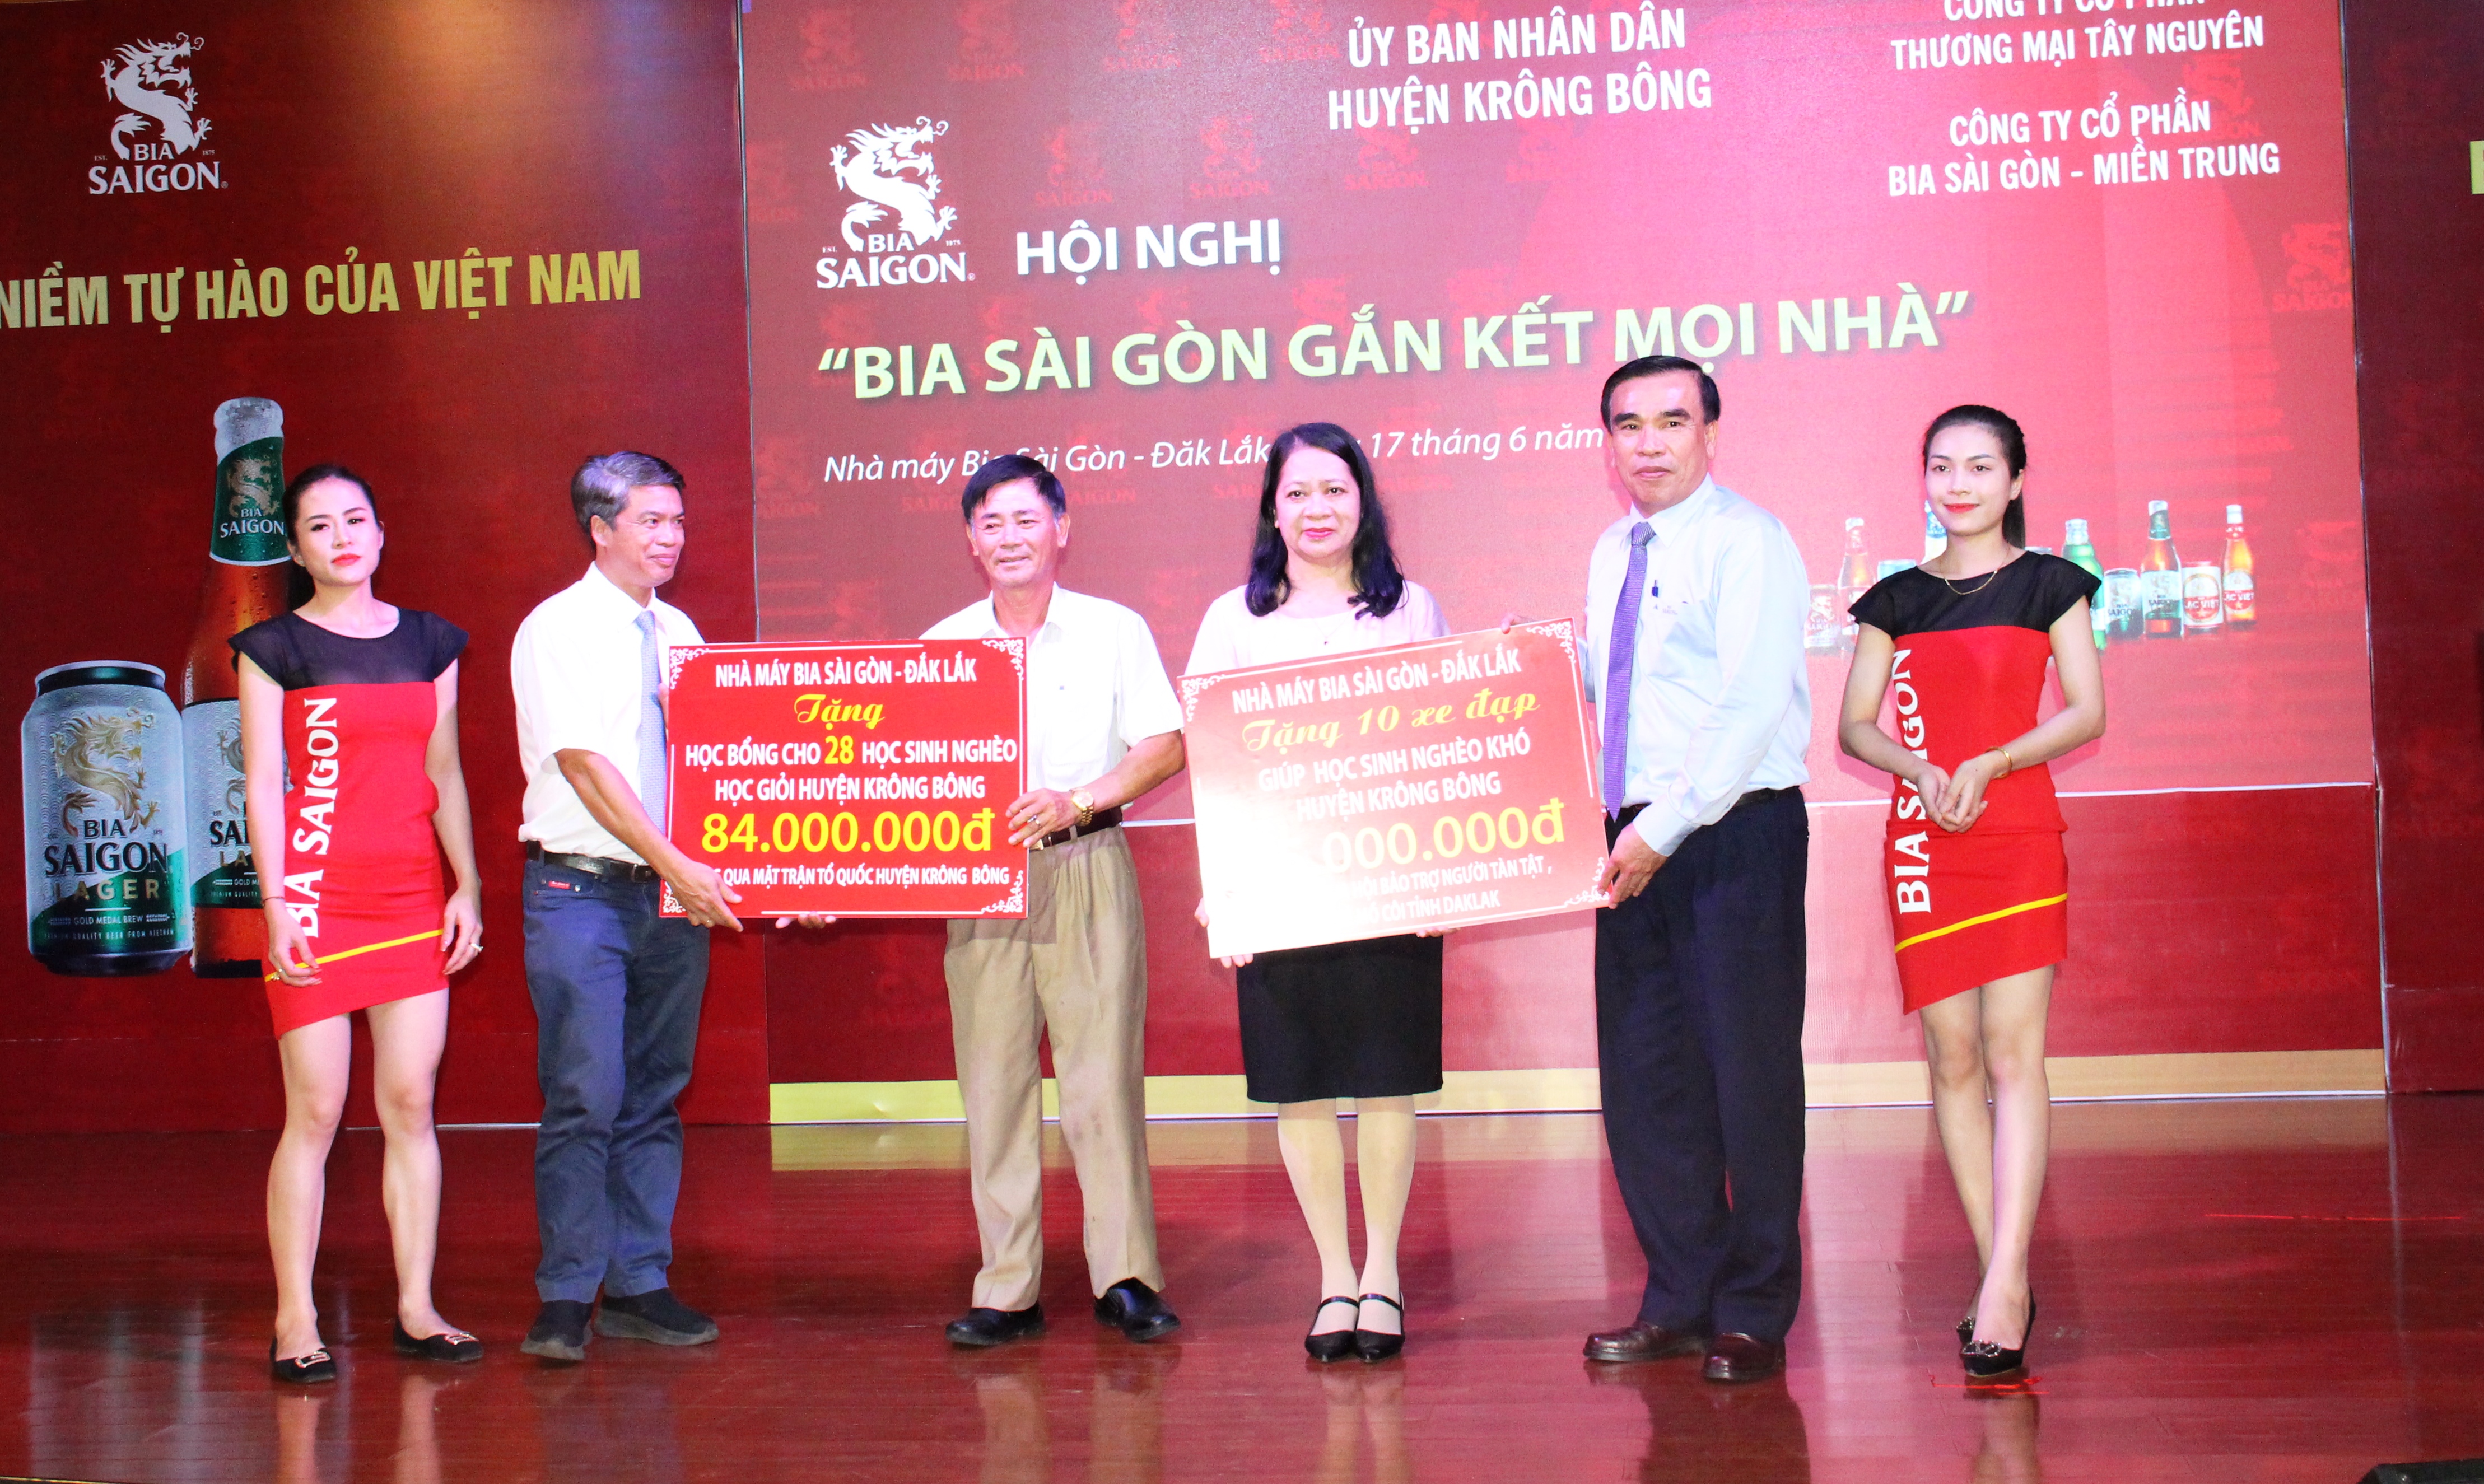 Hội nghị “Bia Sài Gòn gắn kết mọi nhà”: Trao 99 triệu đồng cho học sinh nghèo, khó khăn của huyện Krông Bông